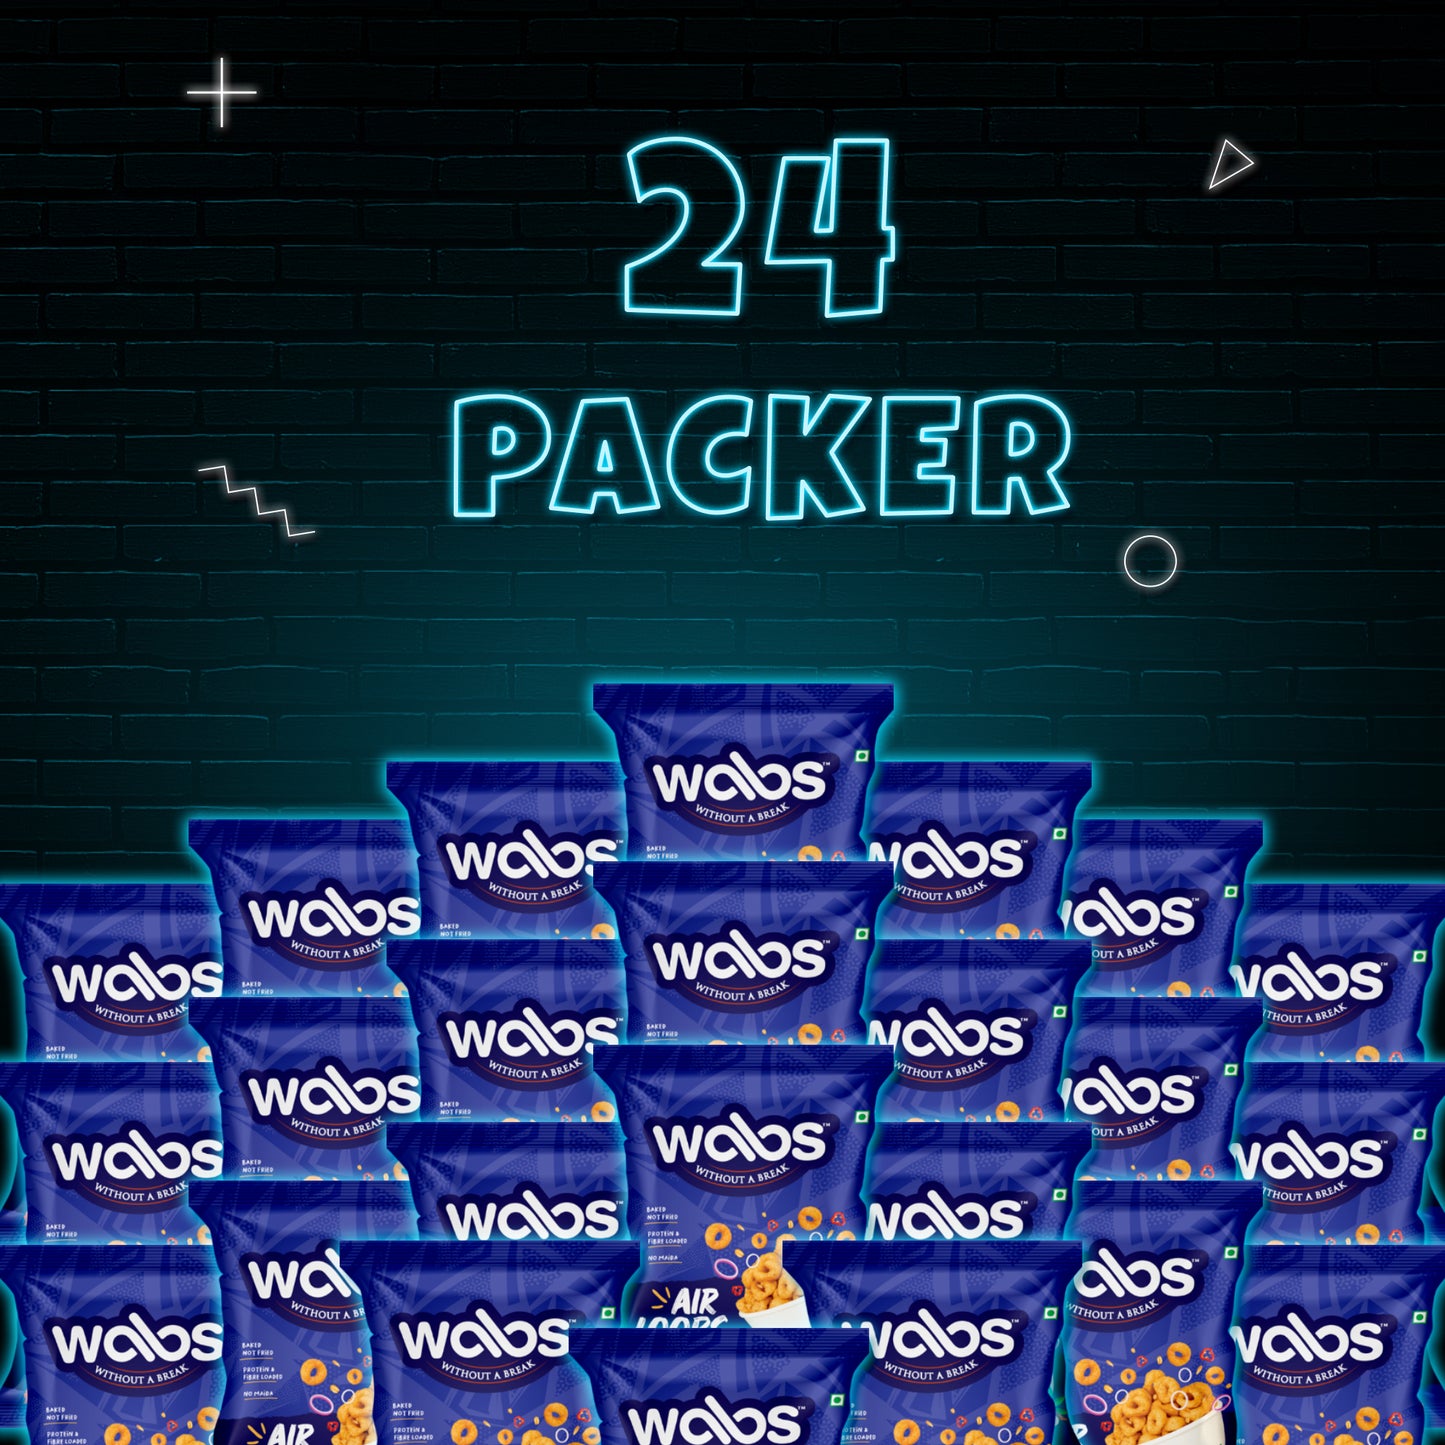 WABS - Air Loops, 24 Packer